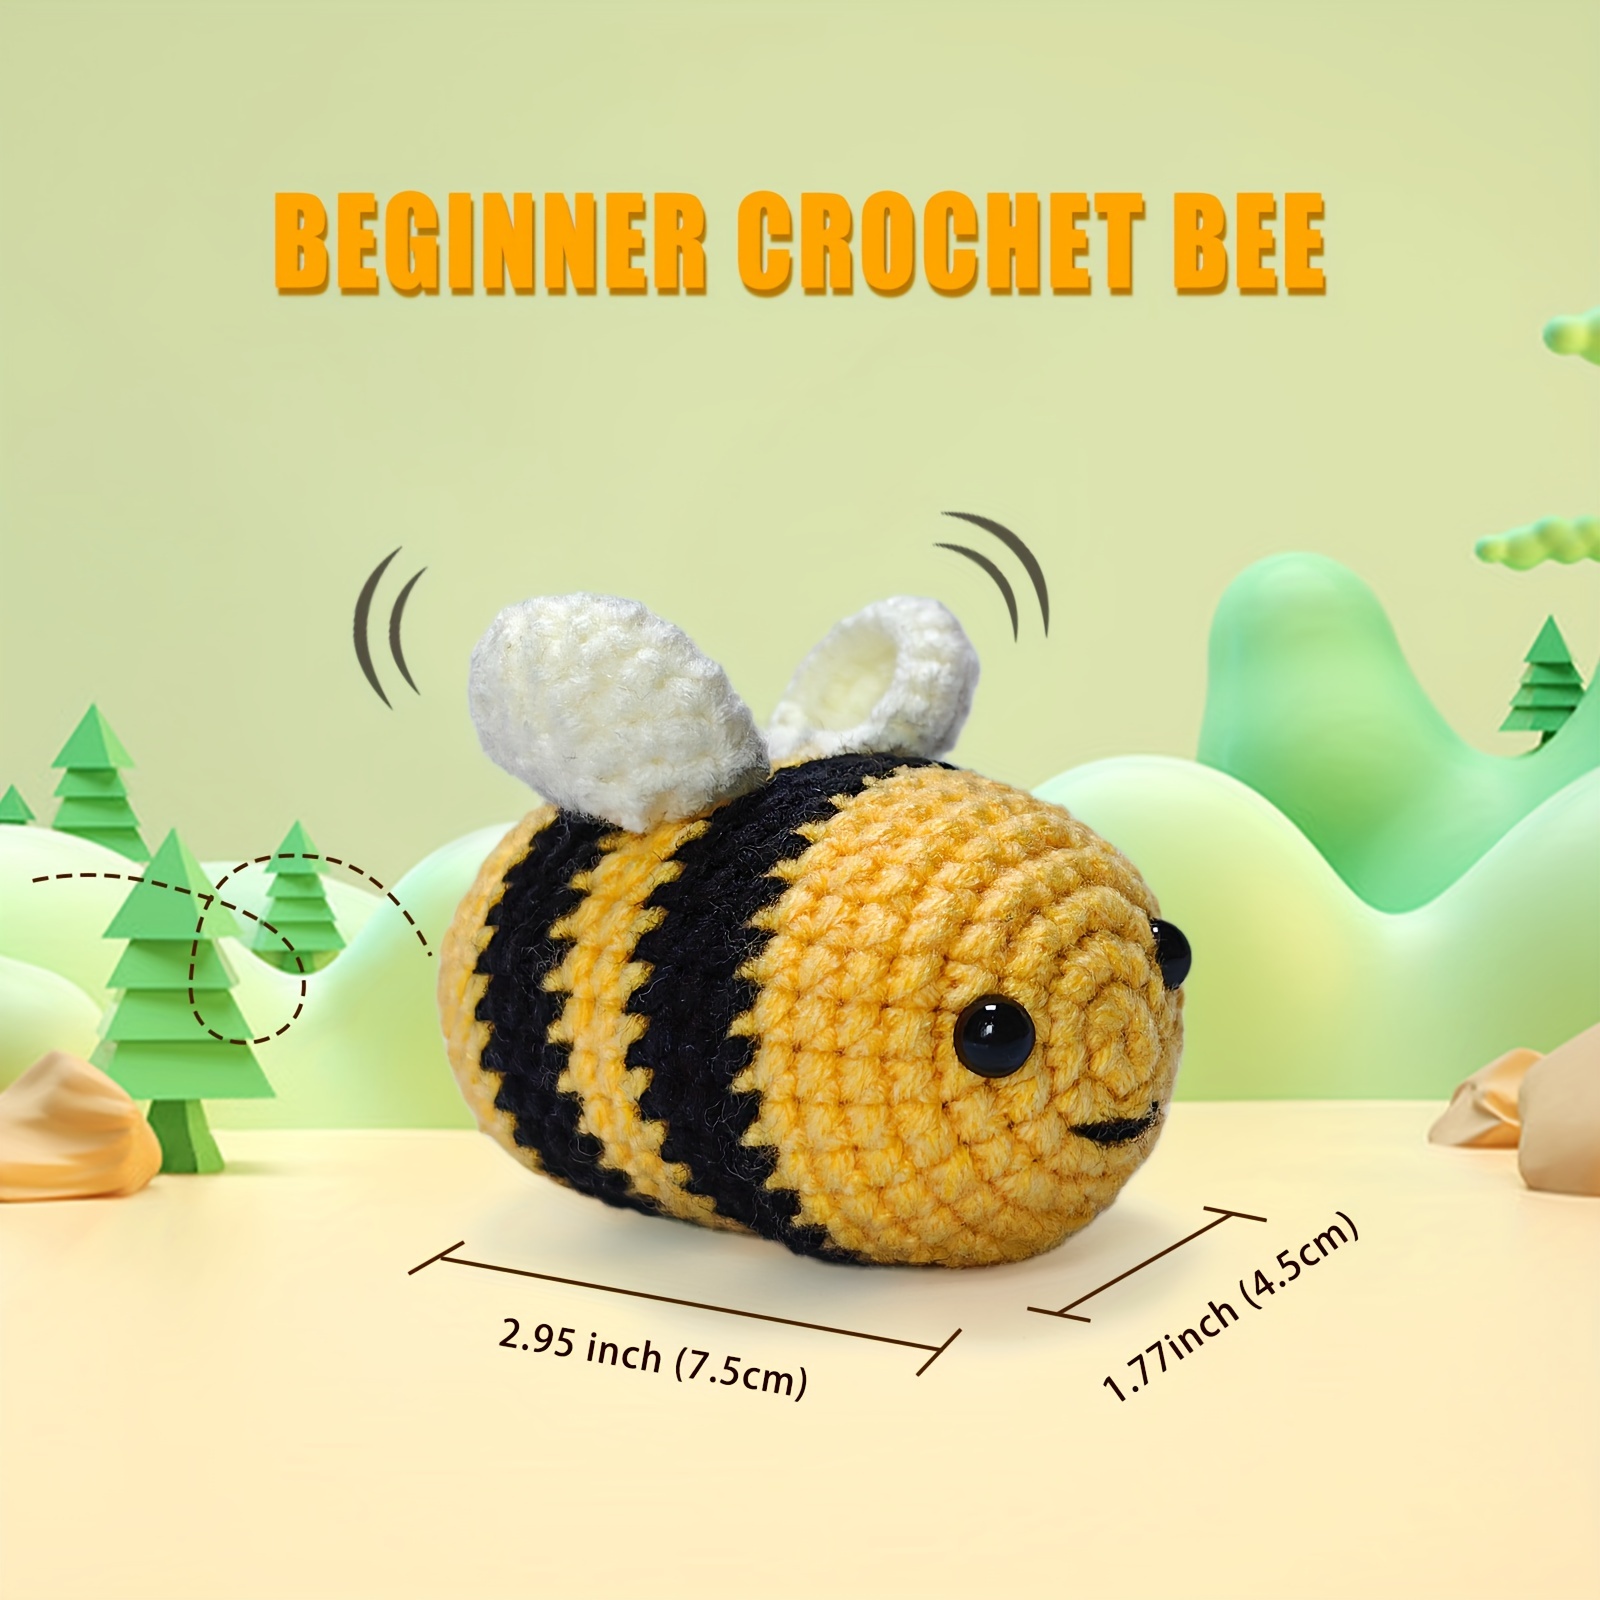 Bumblebee Crochet Kit